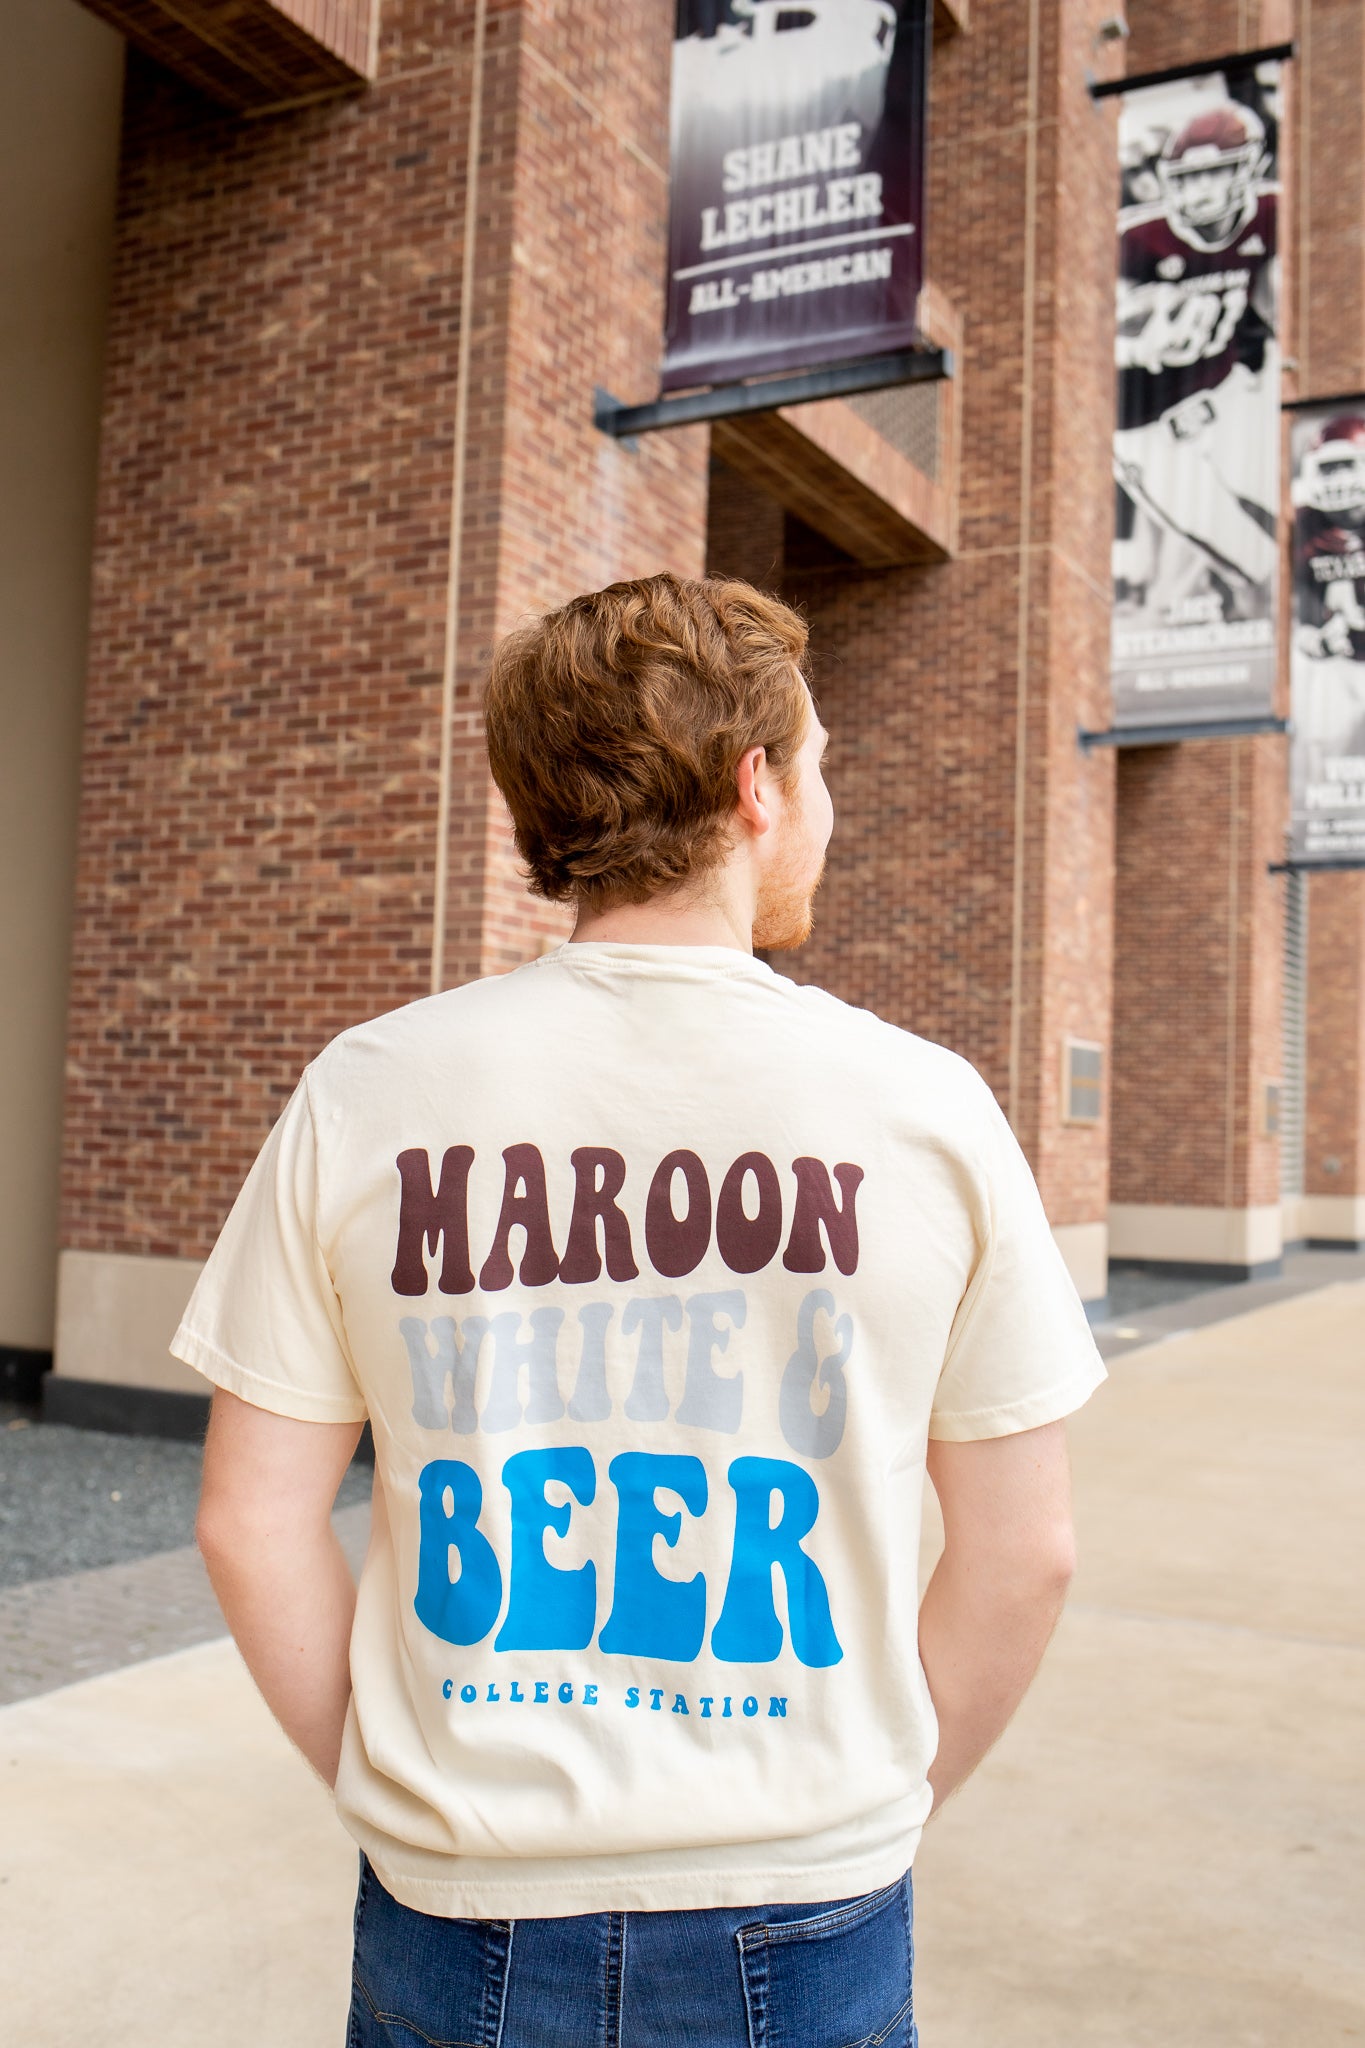 Maroon & White & Beer Tshirt